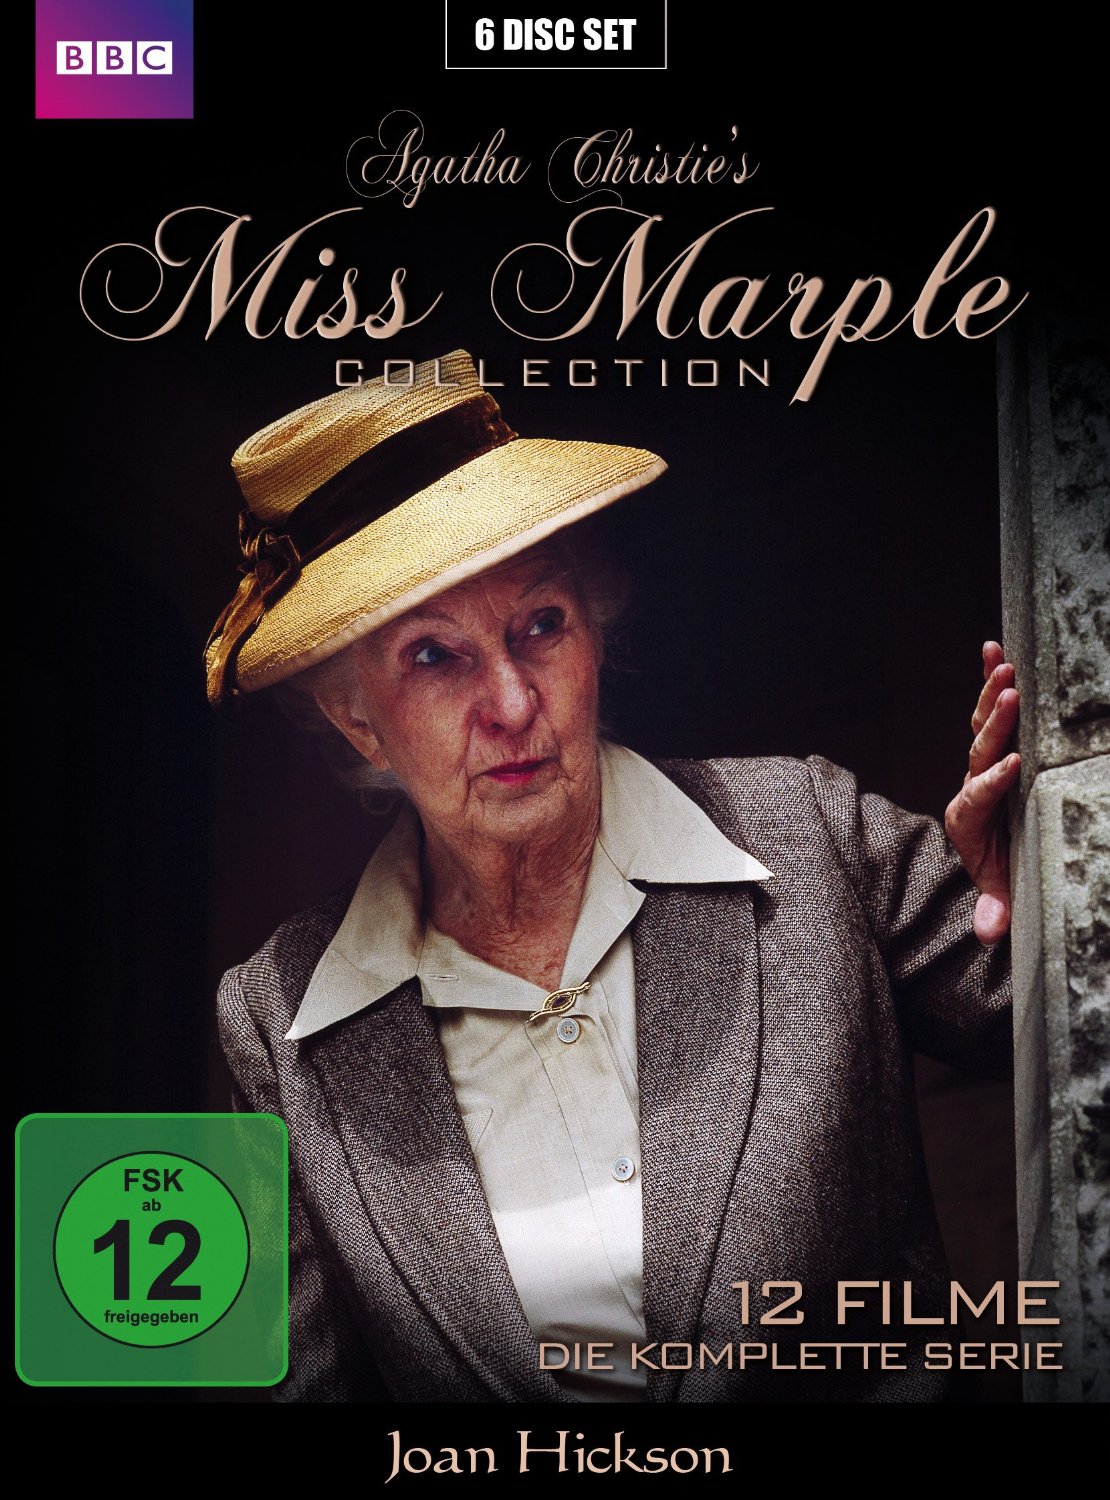 Die Schattenhand Ein Fall für Miss Marple 